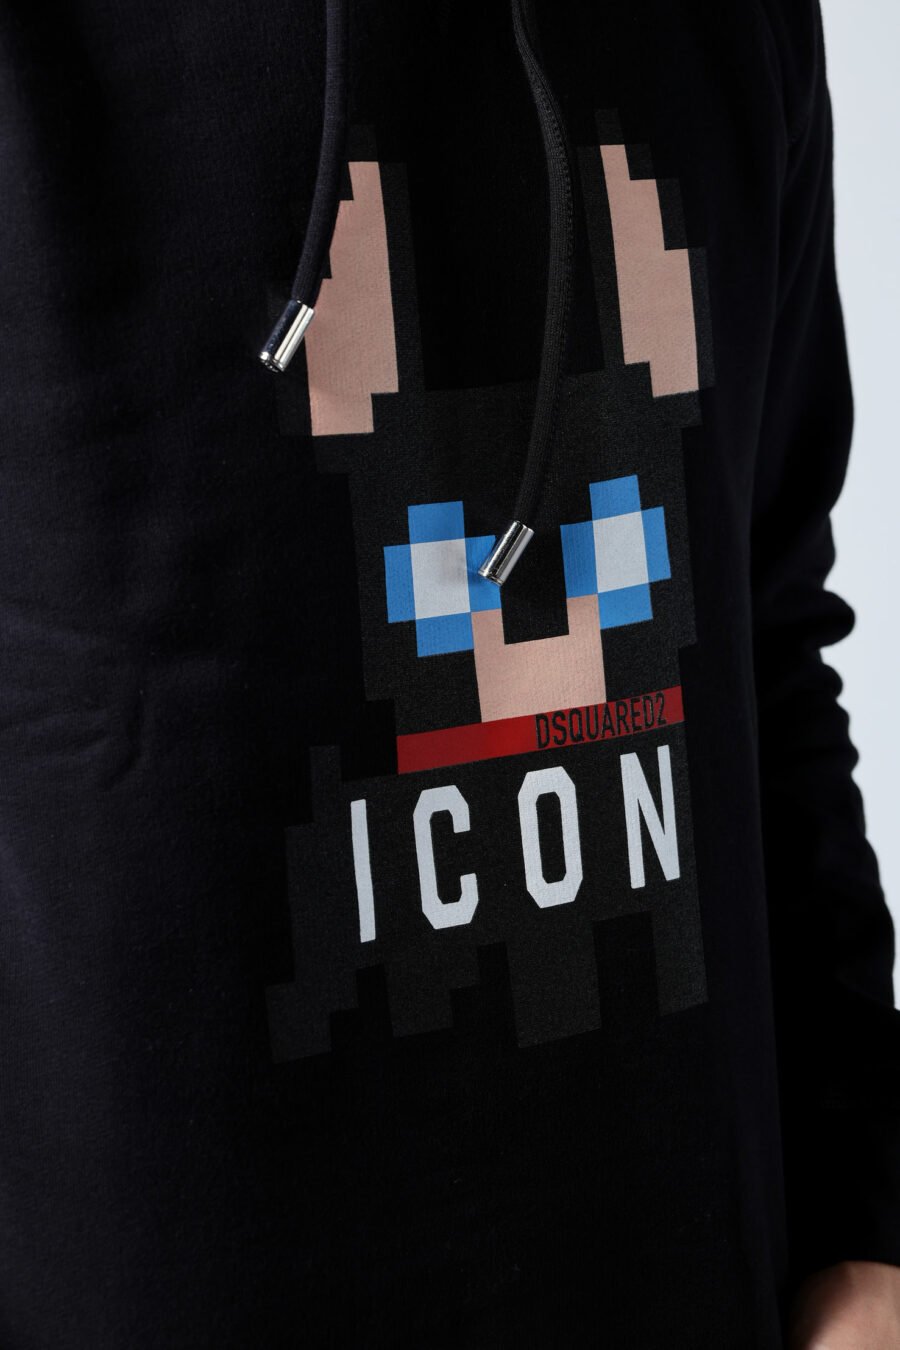 Black hooded sweatshirt with "pixeled" dog logo - Untitled Catalog 05684